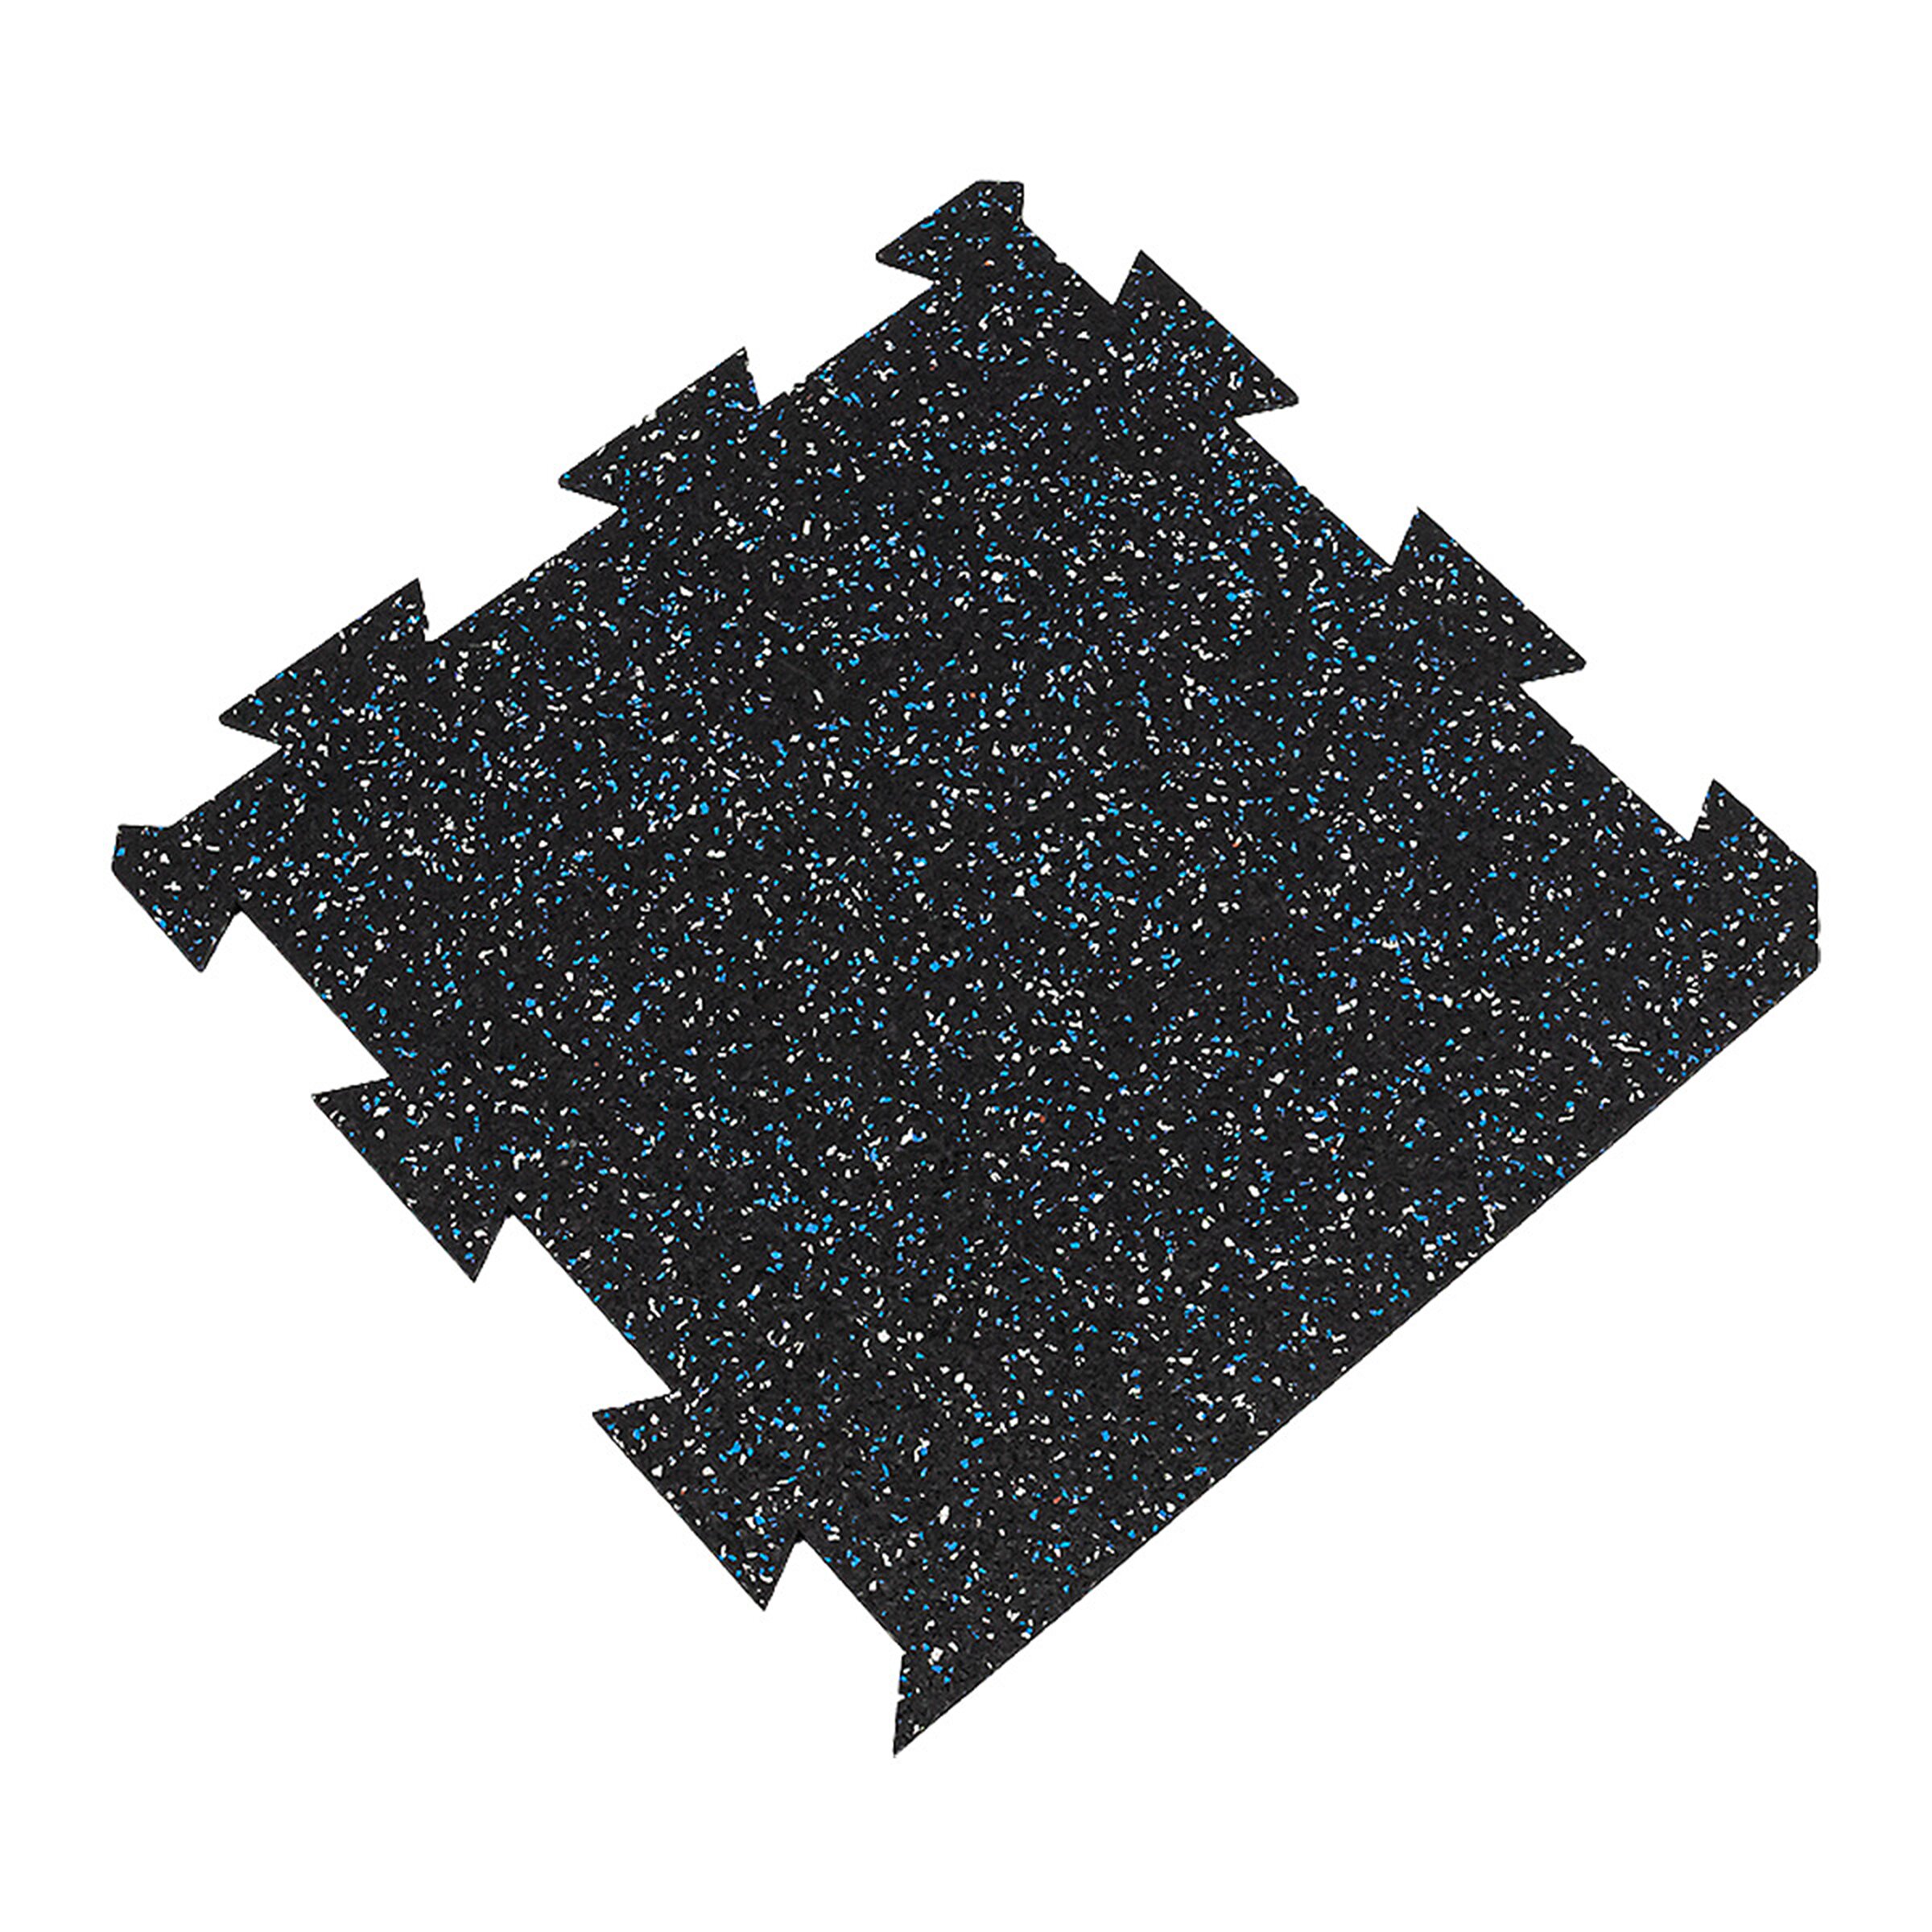 Čierno-bielo-modrá gumová modulová puzzle dlažba (okraj) FLOMA FitFlo SF1050 - dĺžka 50 cm, šírka 50 cm, výška 0,8 cm